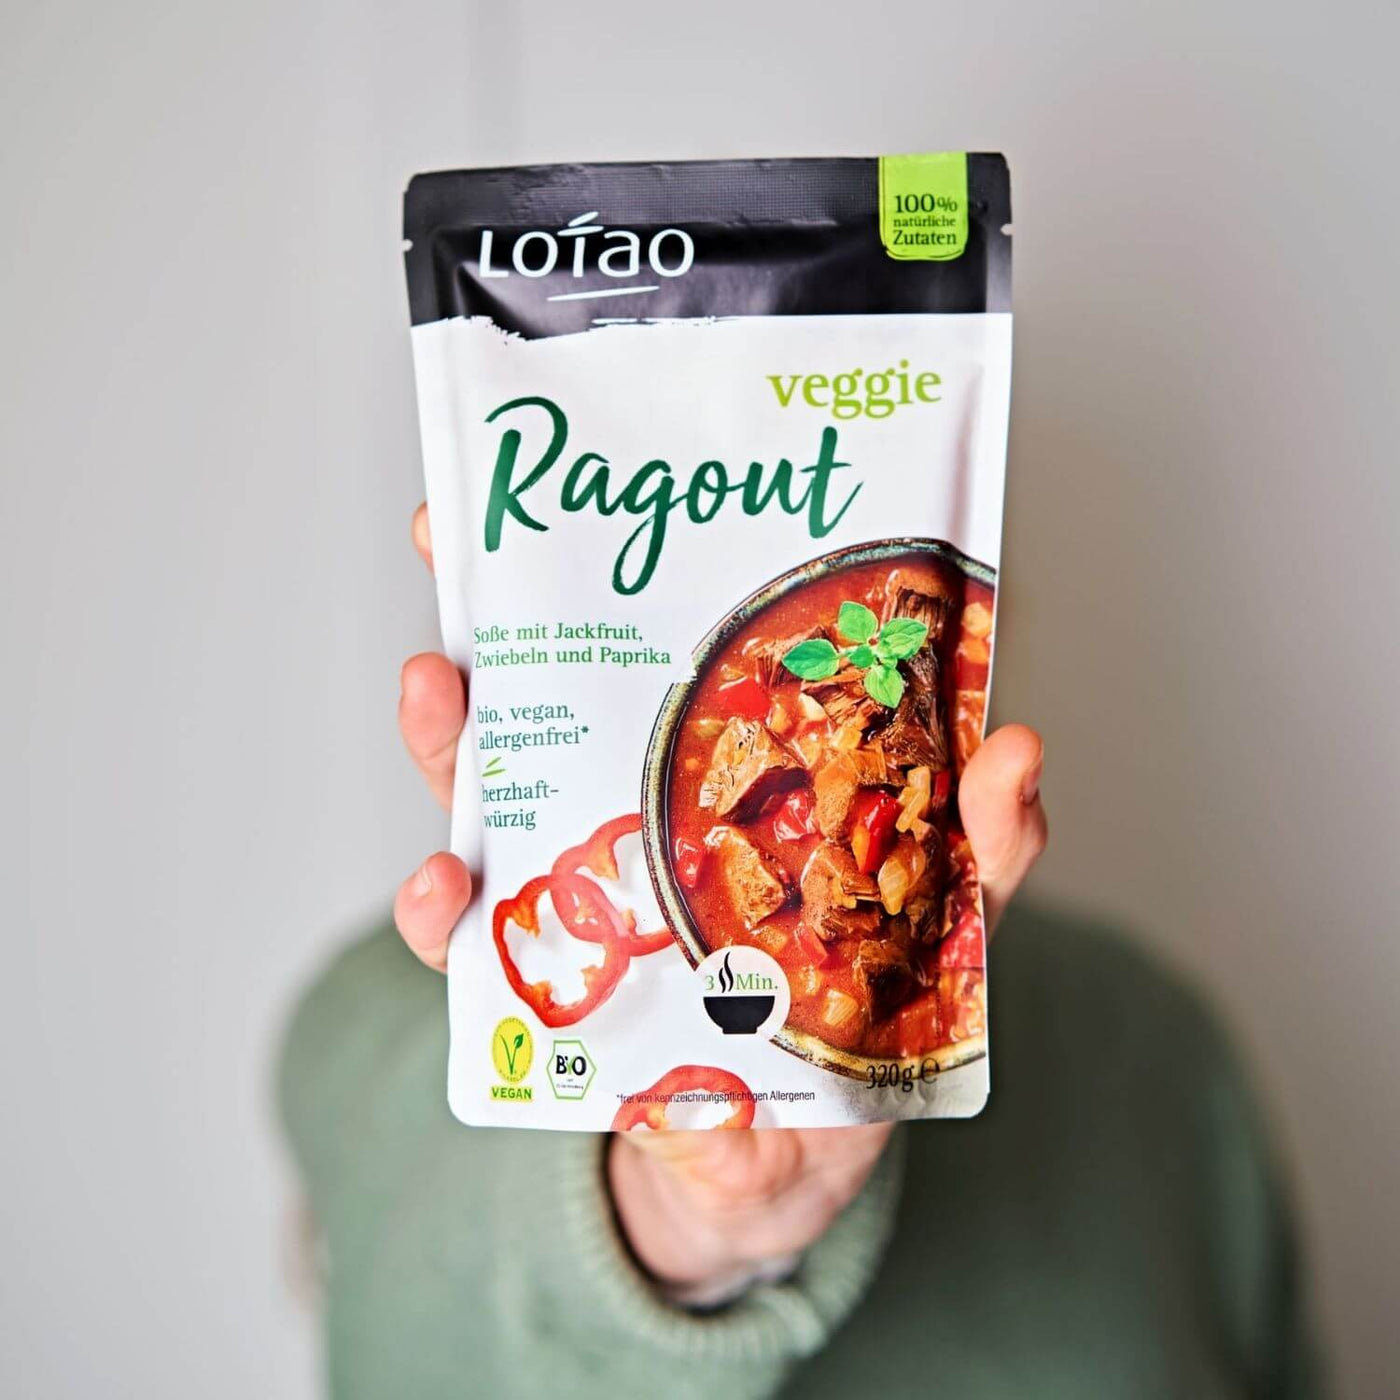 Hand hält 320g Packung Fertigsauce Veggie Ragout von Lotao mit bio-veganer Fertigsosse mit Jackfruit als veganer Fleischersatz, Zwiebeln und Paprika.